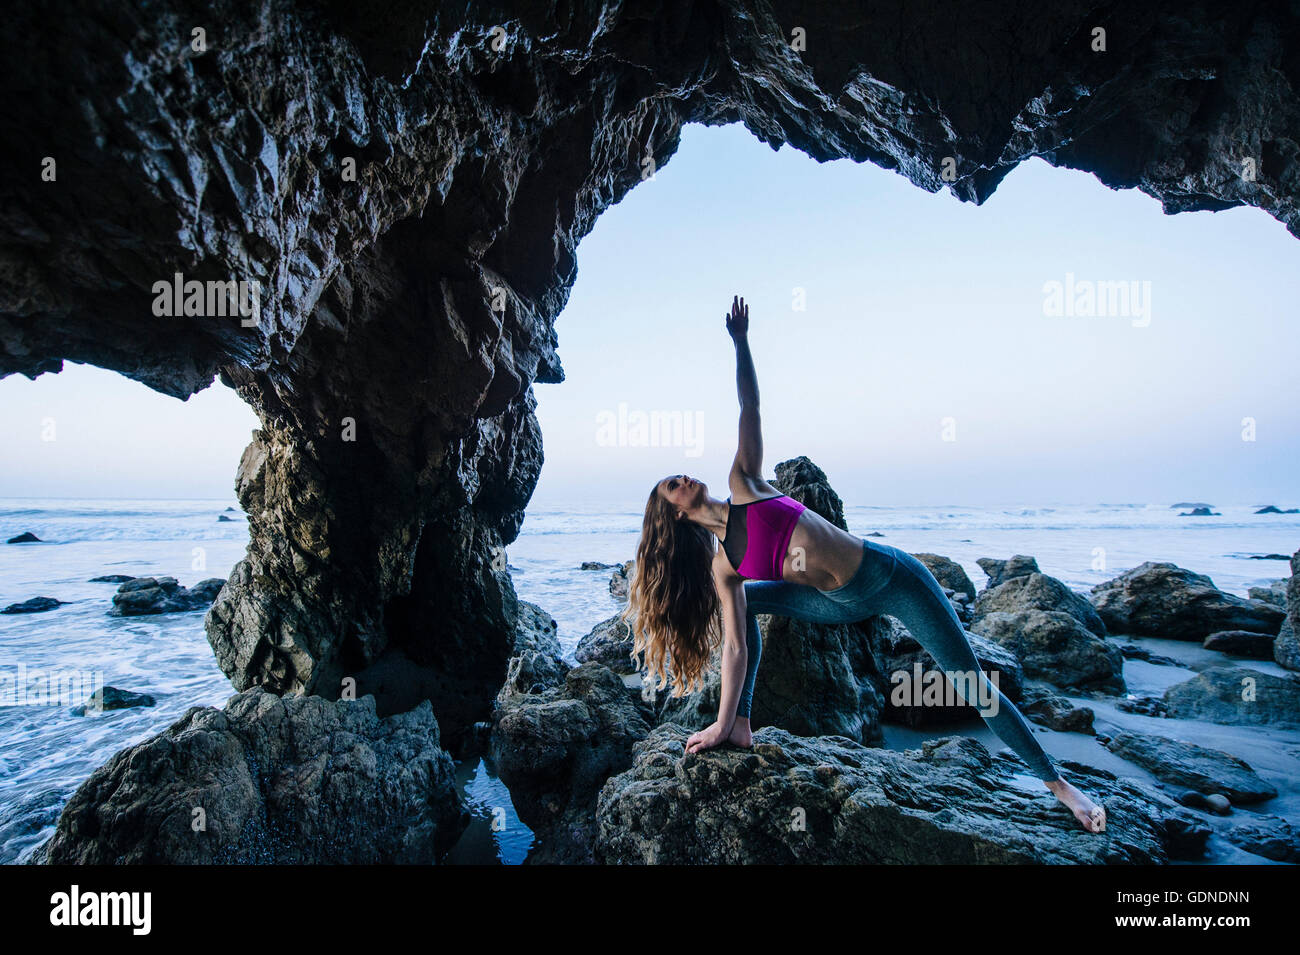 Jeune danseuse en équilibre en équilibre sur la main dans la grotte de la mer, Los Angeles, Californie, USA Banque D'Images